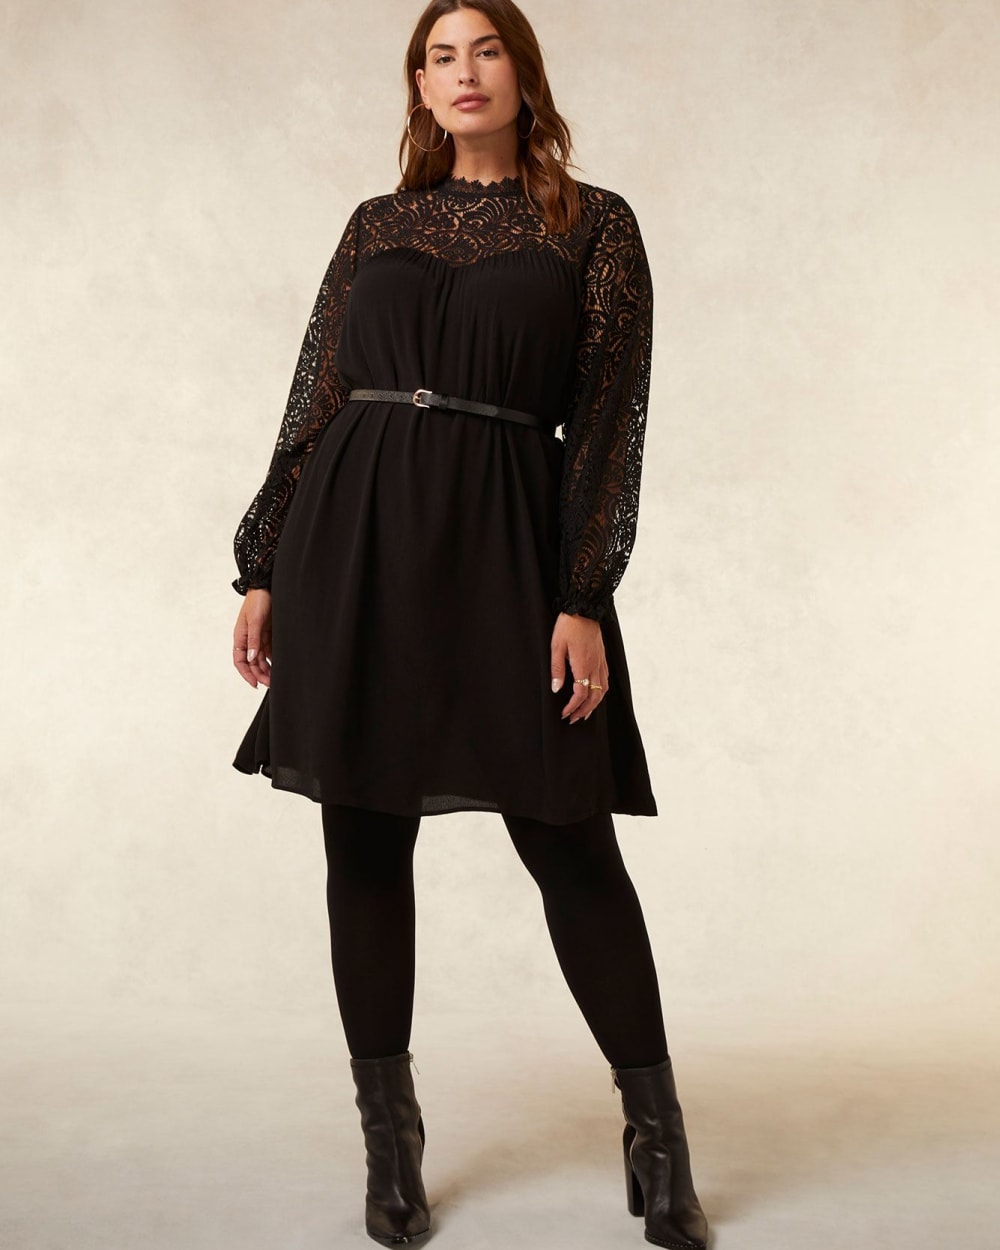 Black Dress with Lace Bustline - Addition Elle